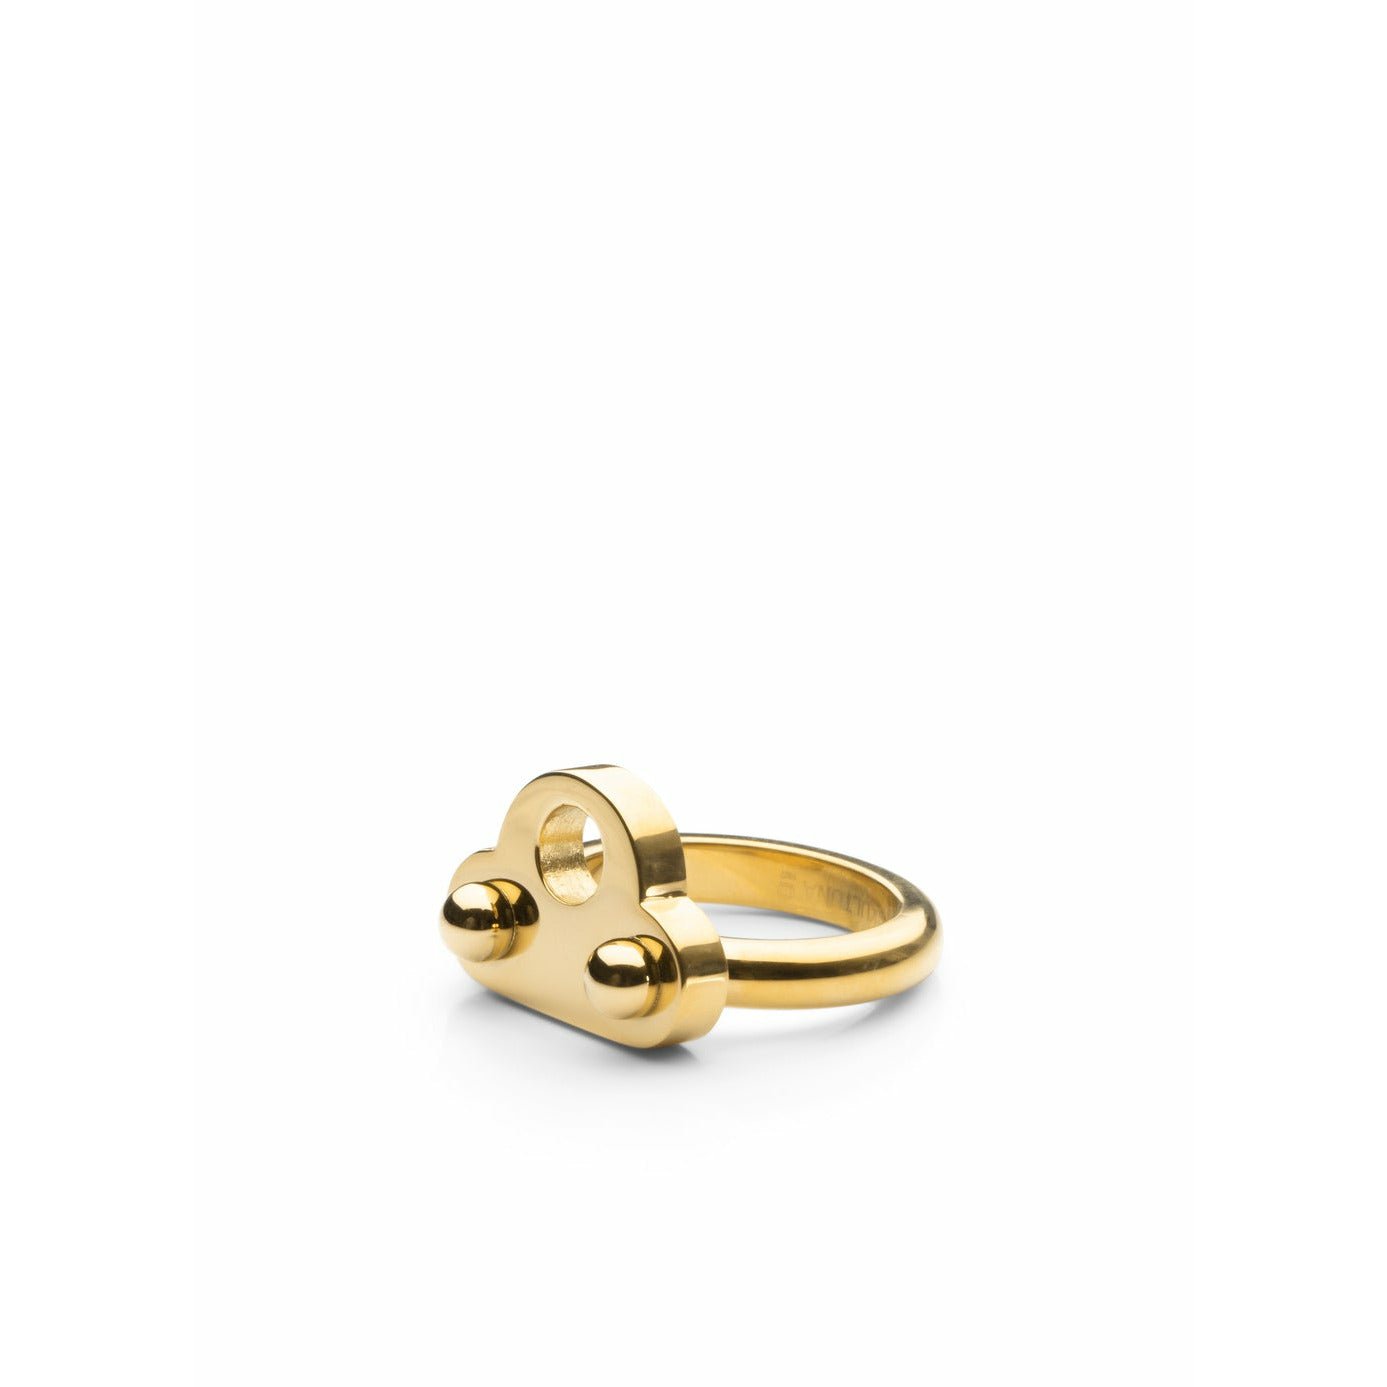 Skultuna Key Signet Ring Large Gold Plated, ø1,97 Cm